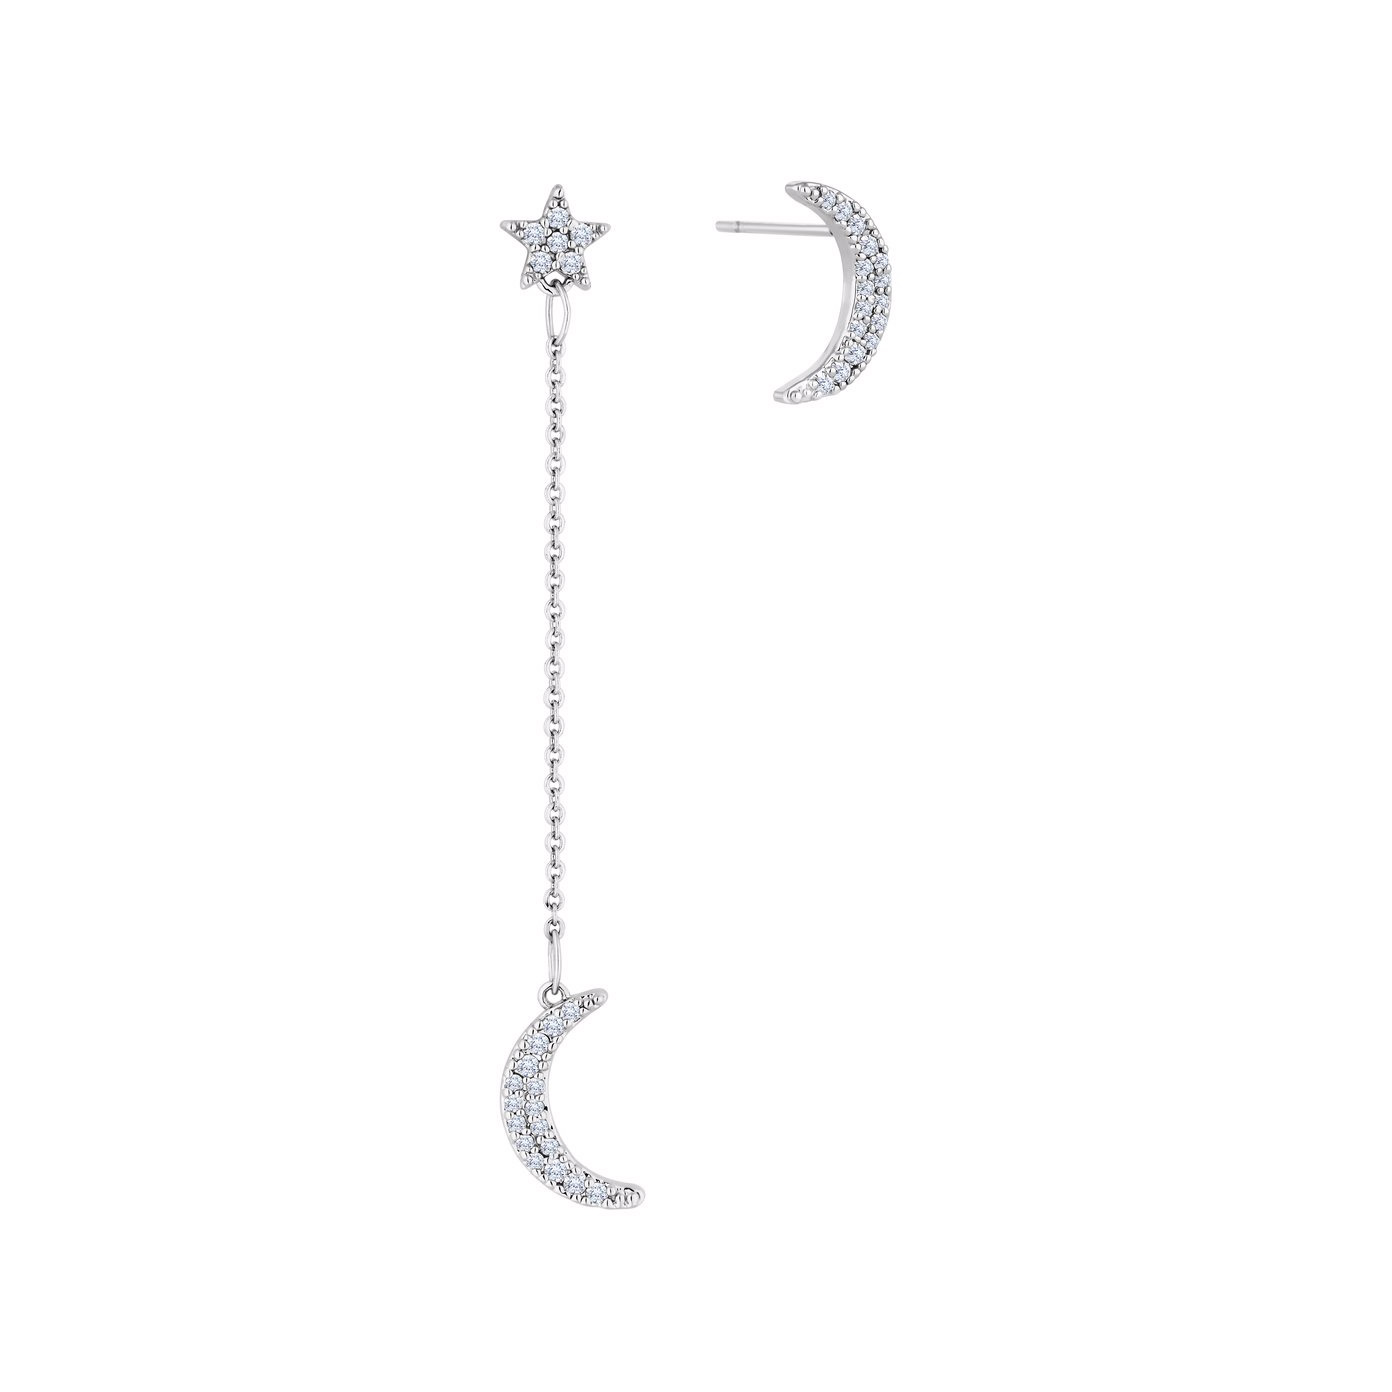 Fornitore di orecchini con stella lunare gioielli incisi personalizzati con progettazione di gioielli OEM / ODM